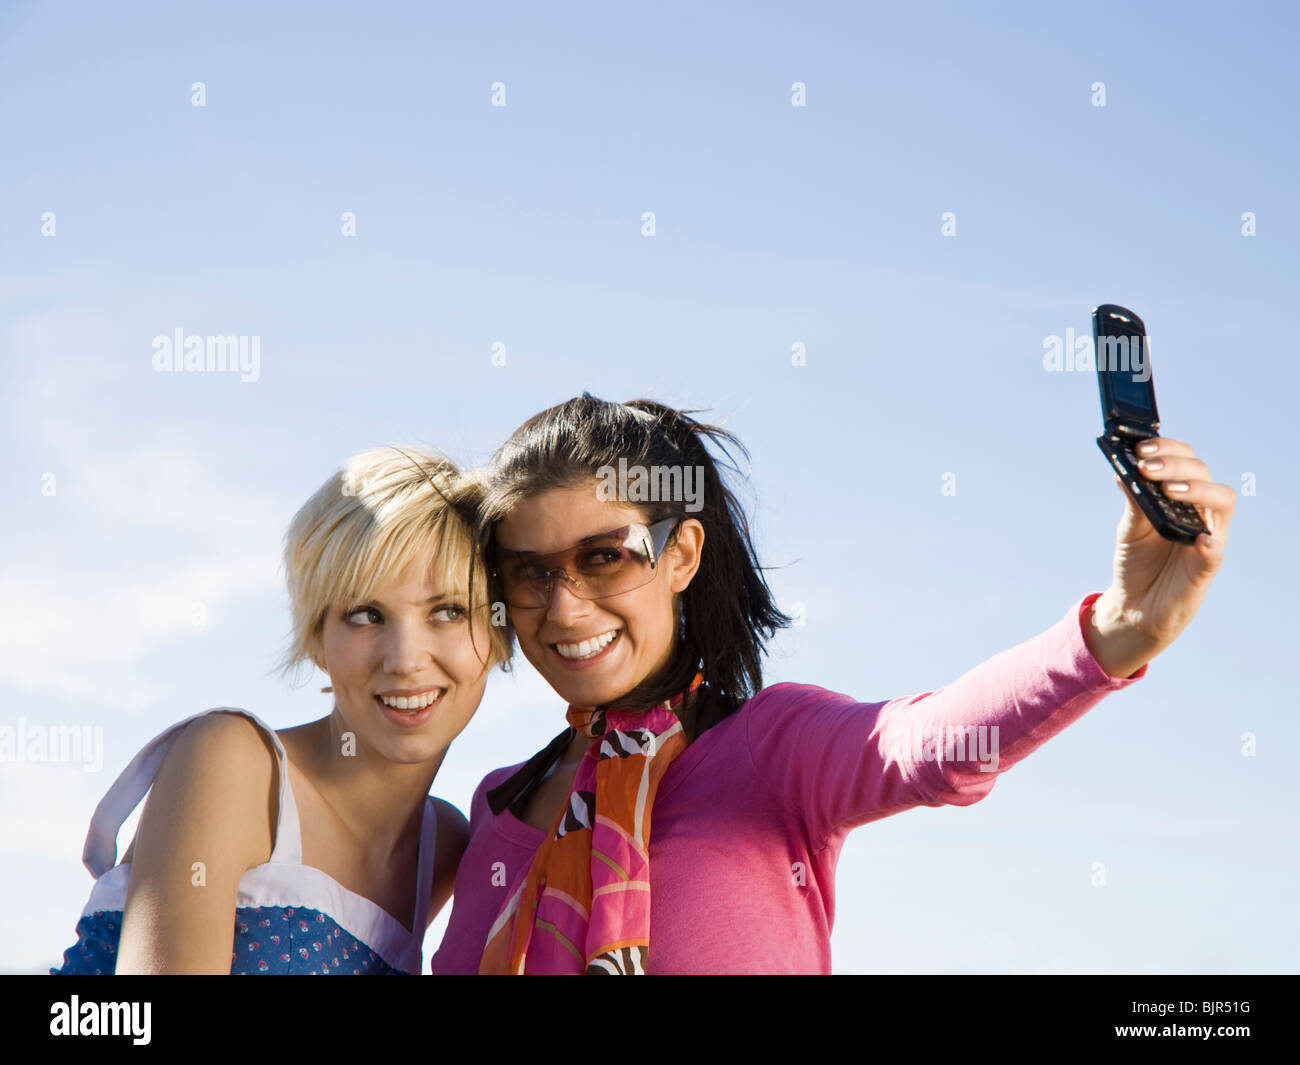 two women taking a photo Stock Photo